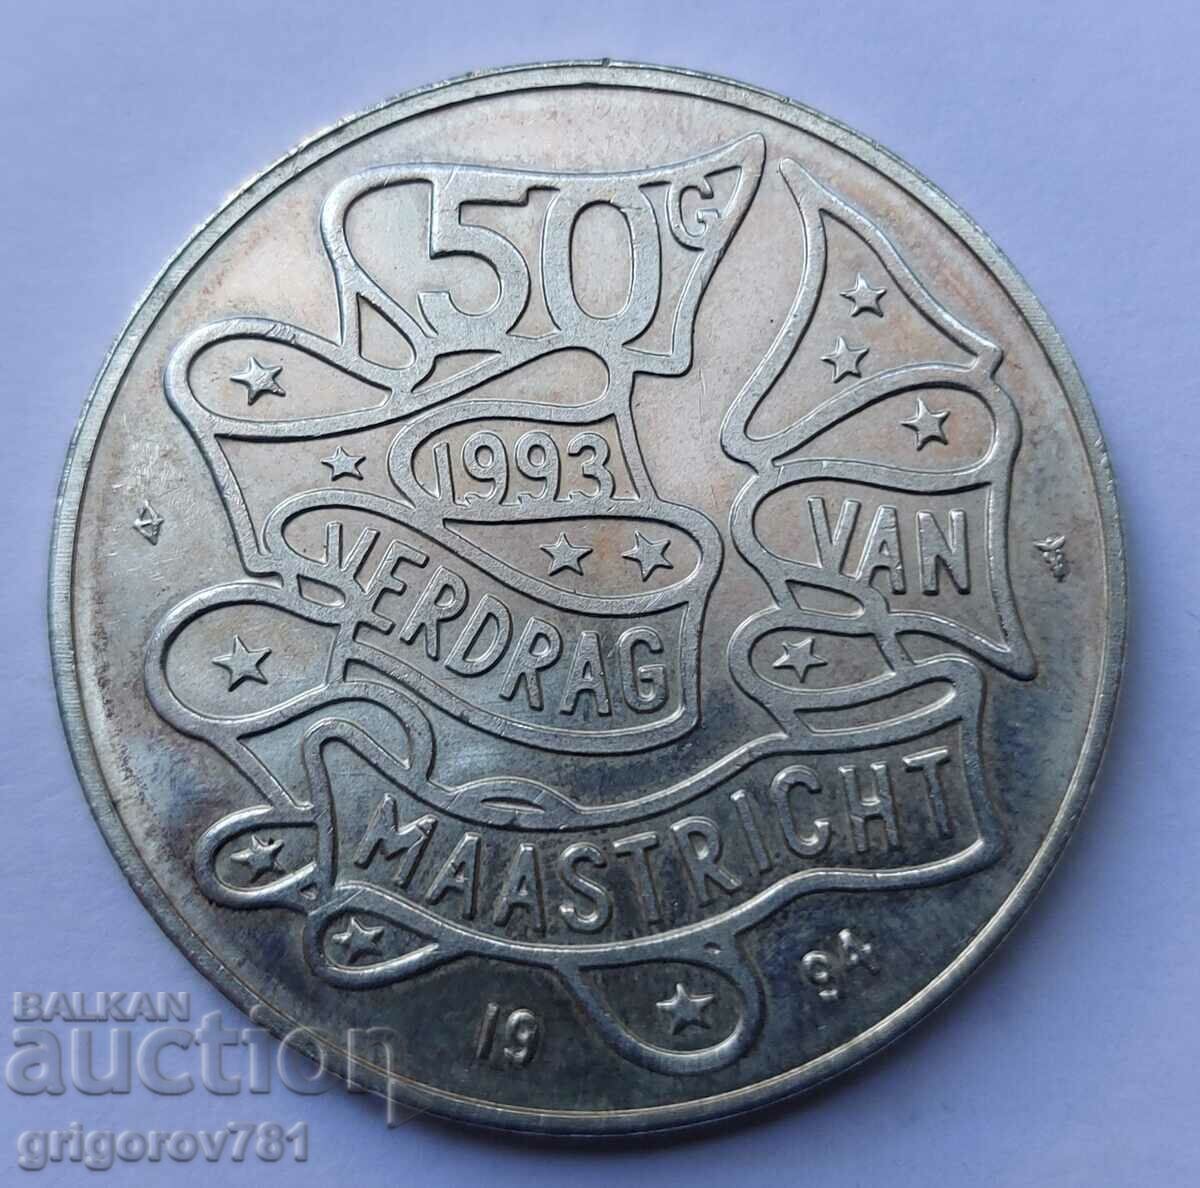 50 guldeni de argint Olanda 1993 - Moneda de argint #8